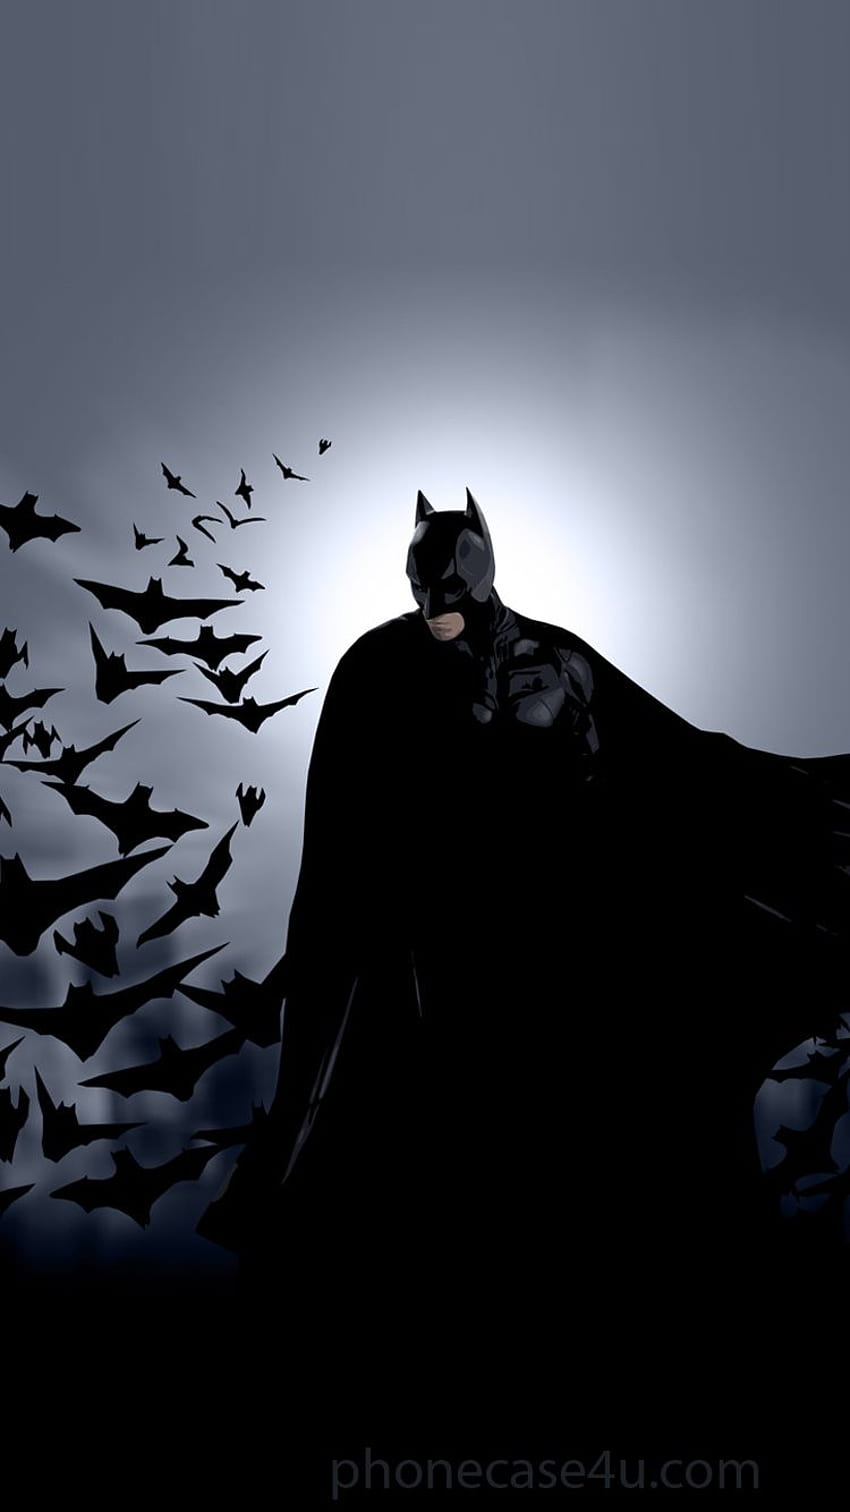 Blog. Toko Kasing dan Aksesori Ponsel Terbaik, Batman iPhone wallpaper ponsel HD